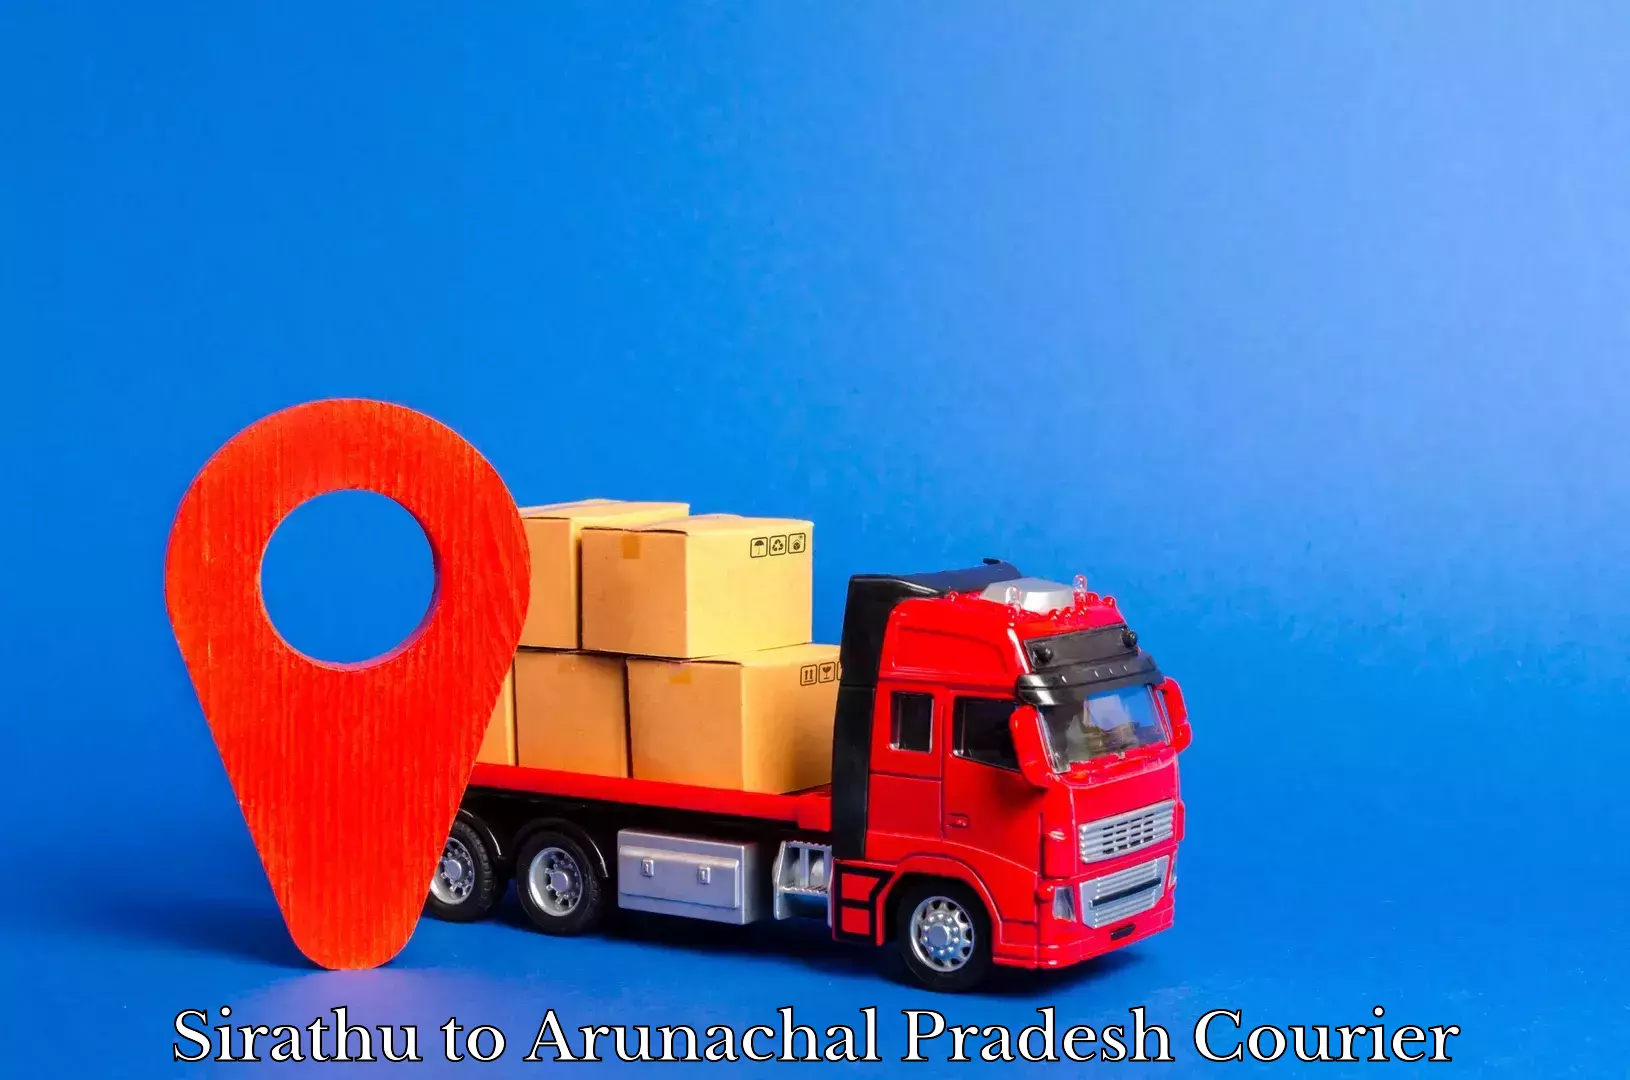 Premium courier solutions in Sirathu to Arunachal Pradesh